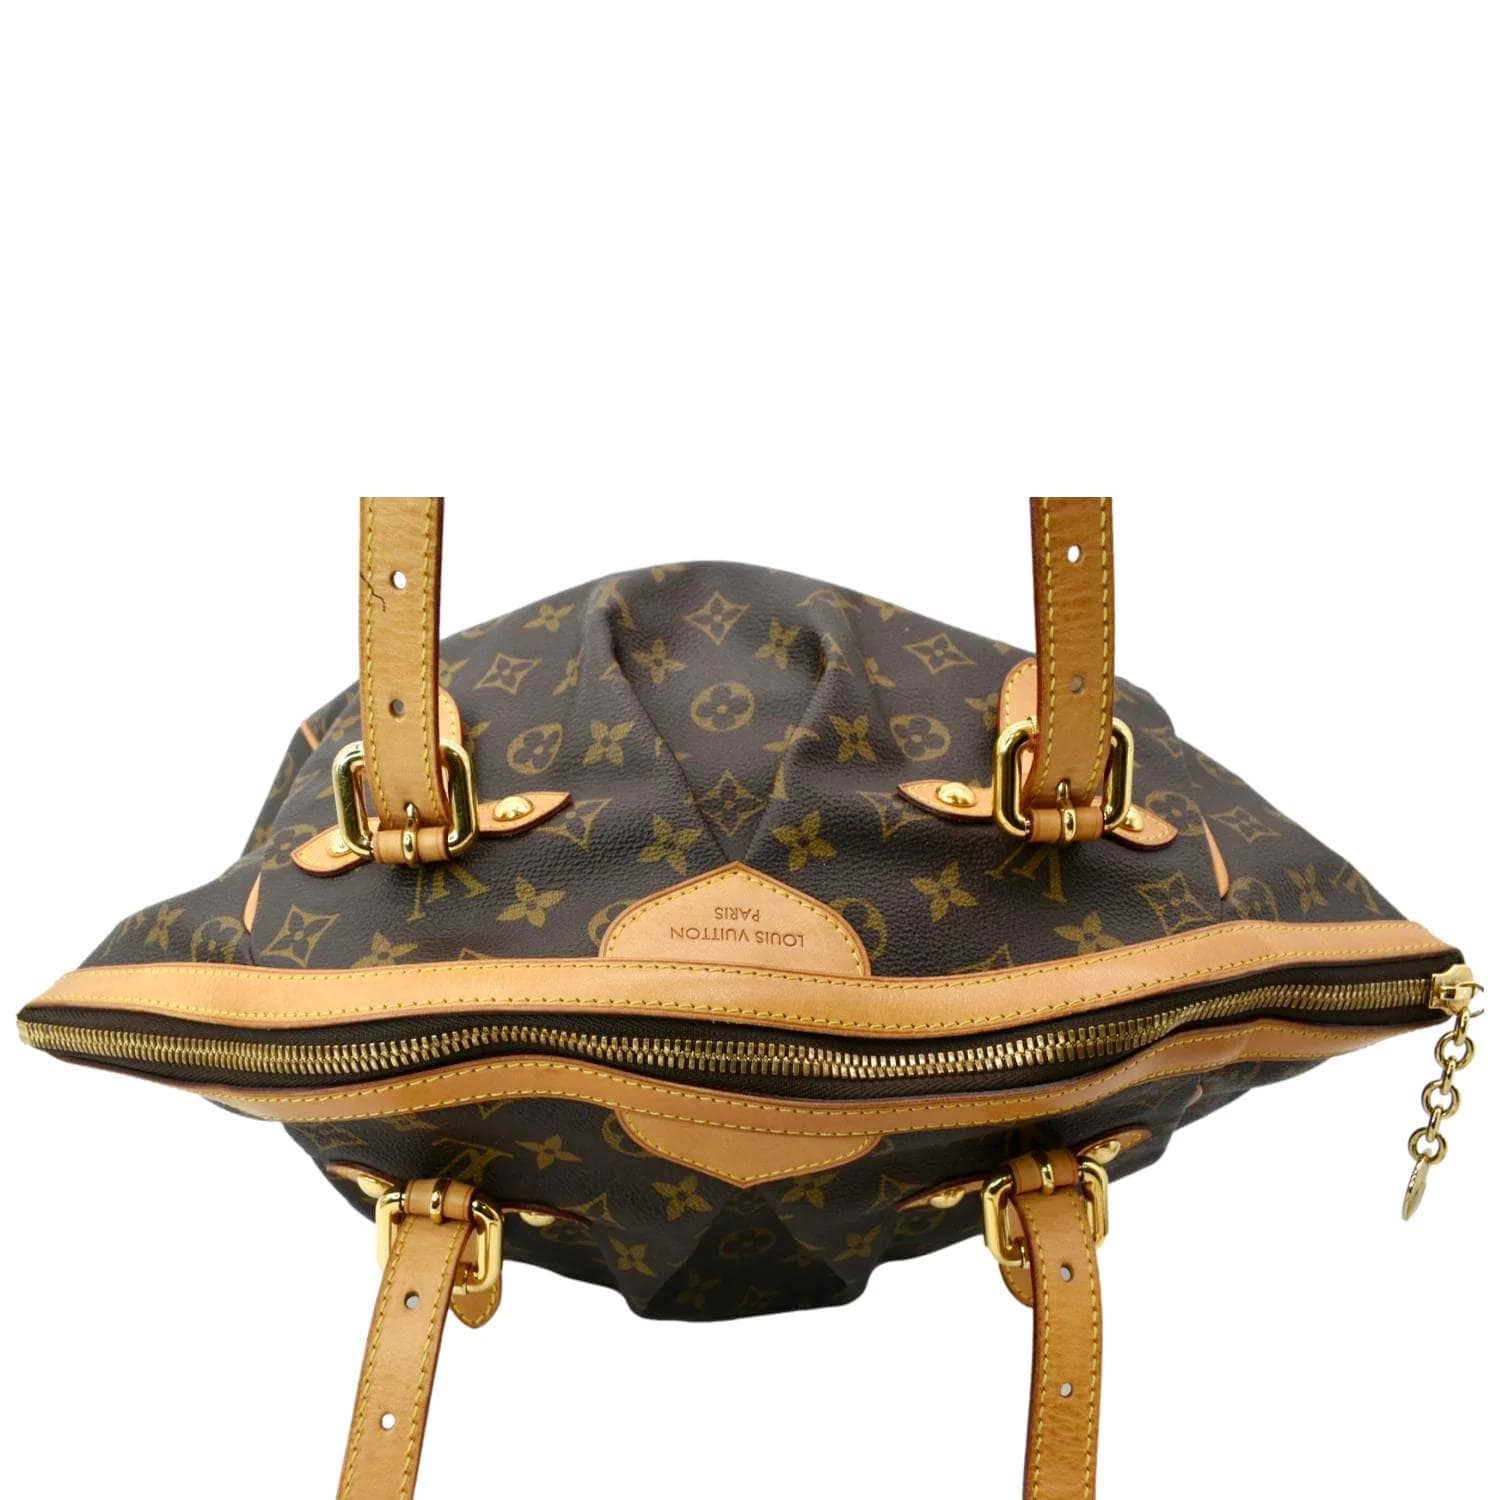 Louis Vuitton Tivoli GM Monogram Canvas Large Satchel Shoulder Bag